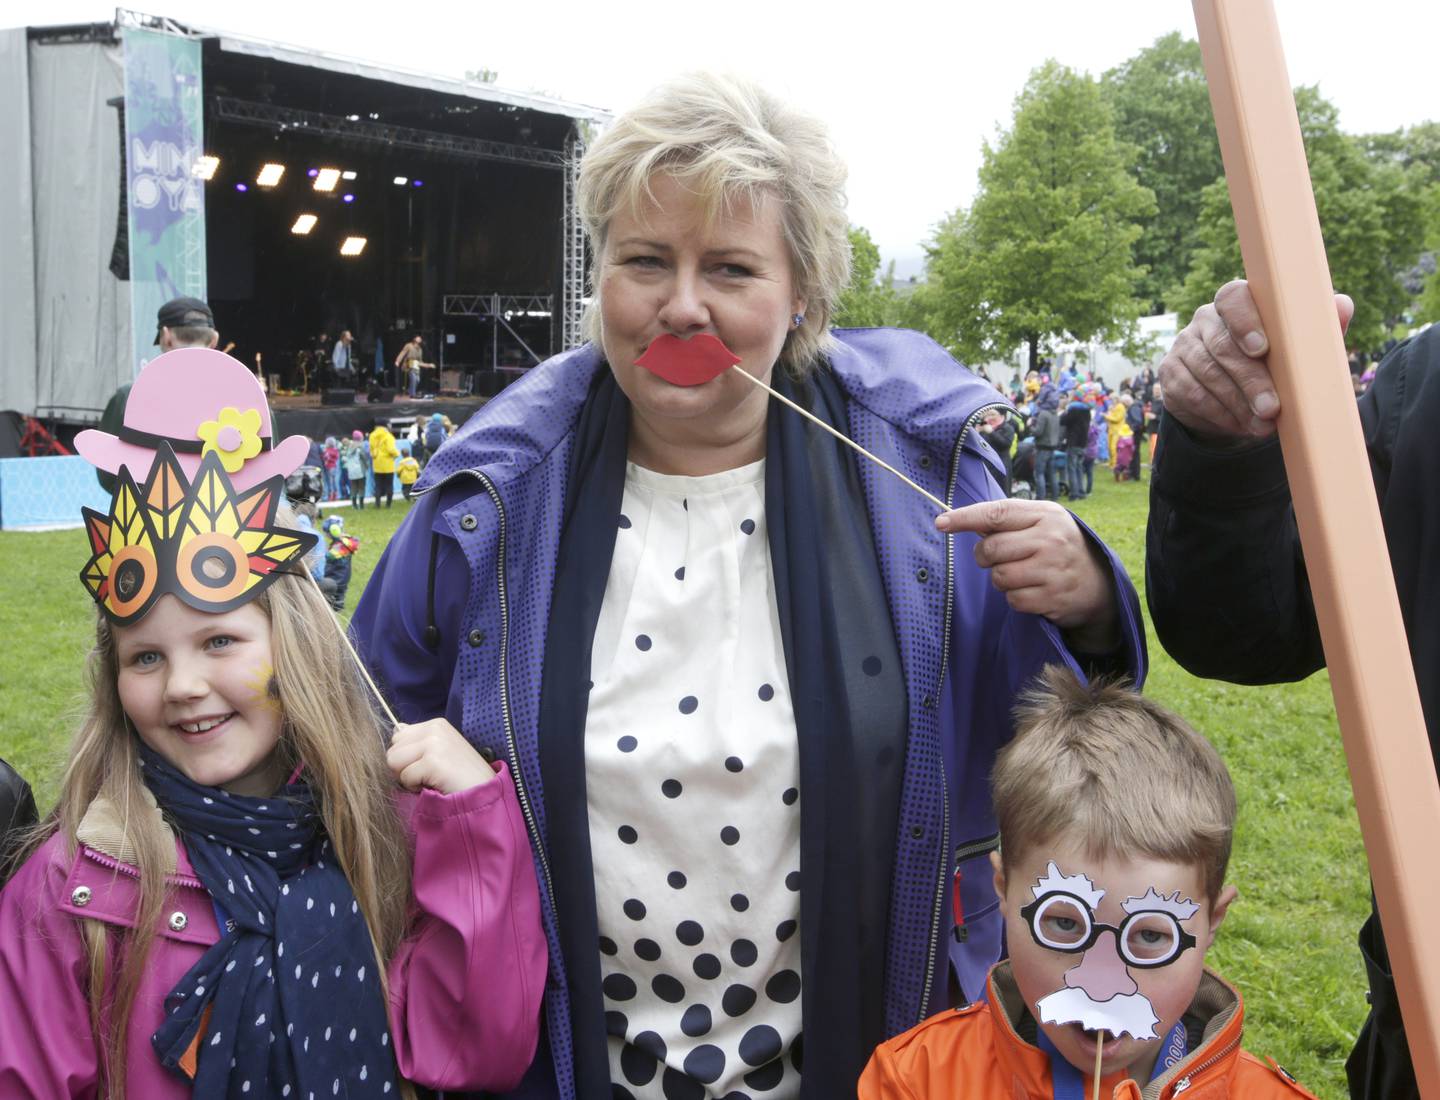 Statsminister Erna Solberg da hun besøkte barnefestivalen Miniøya i 2015. Nå har hun latt seg avbilde på gledesbilde fra pub som får gjenåpne i Oslo, mens festivalen må avlyse. Foto: Vidar Ruud / NTB